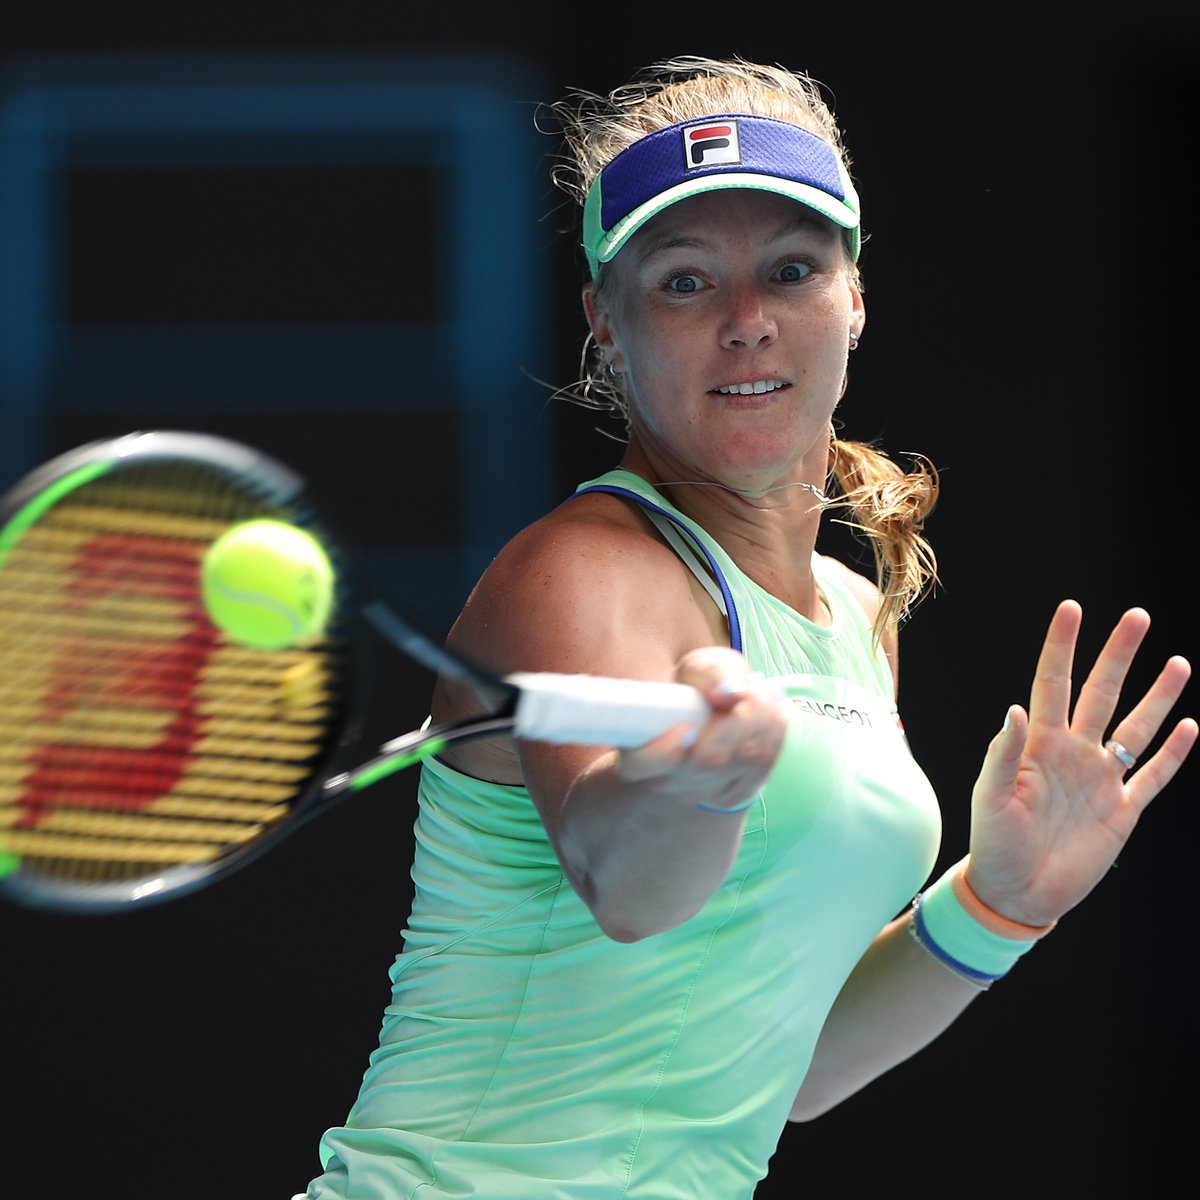 Petersburg: Kiki Bertens defends her title tennisnet.com